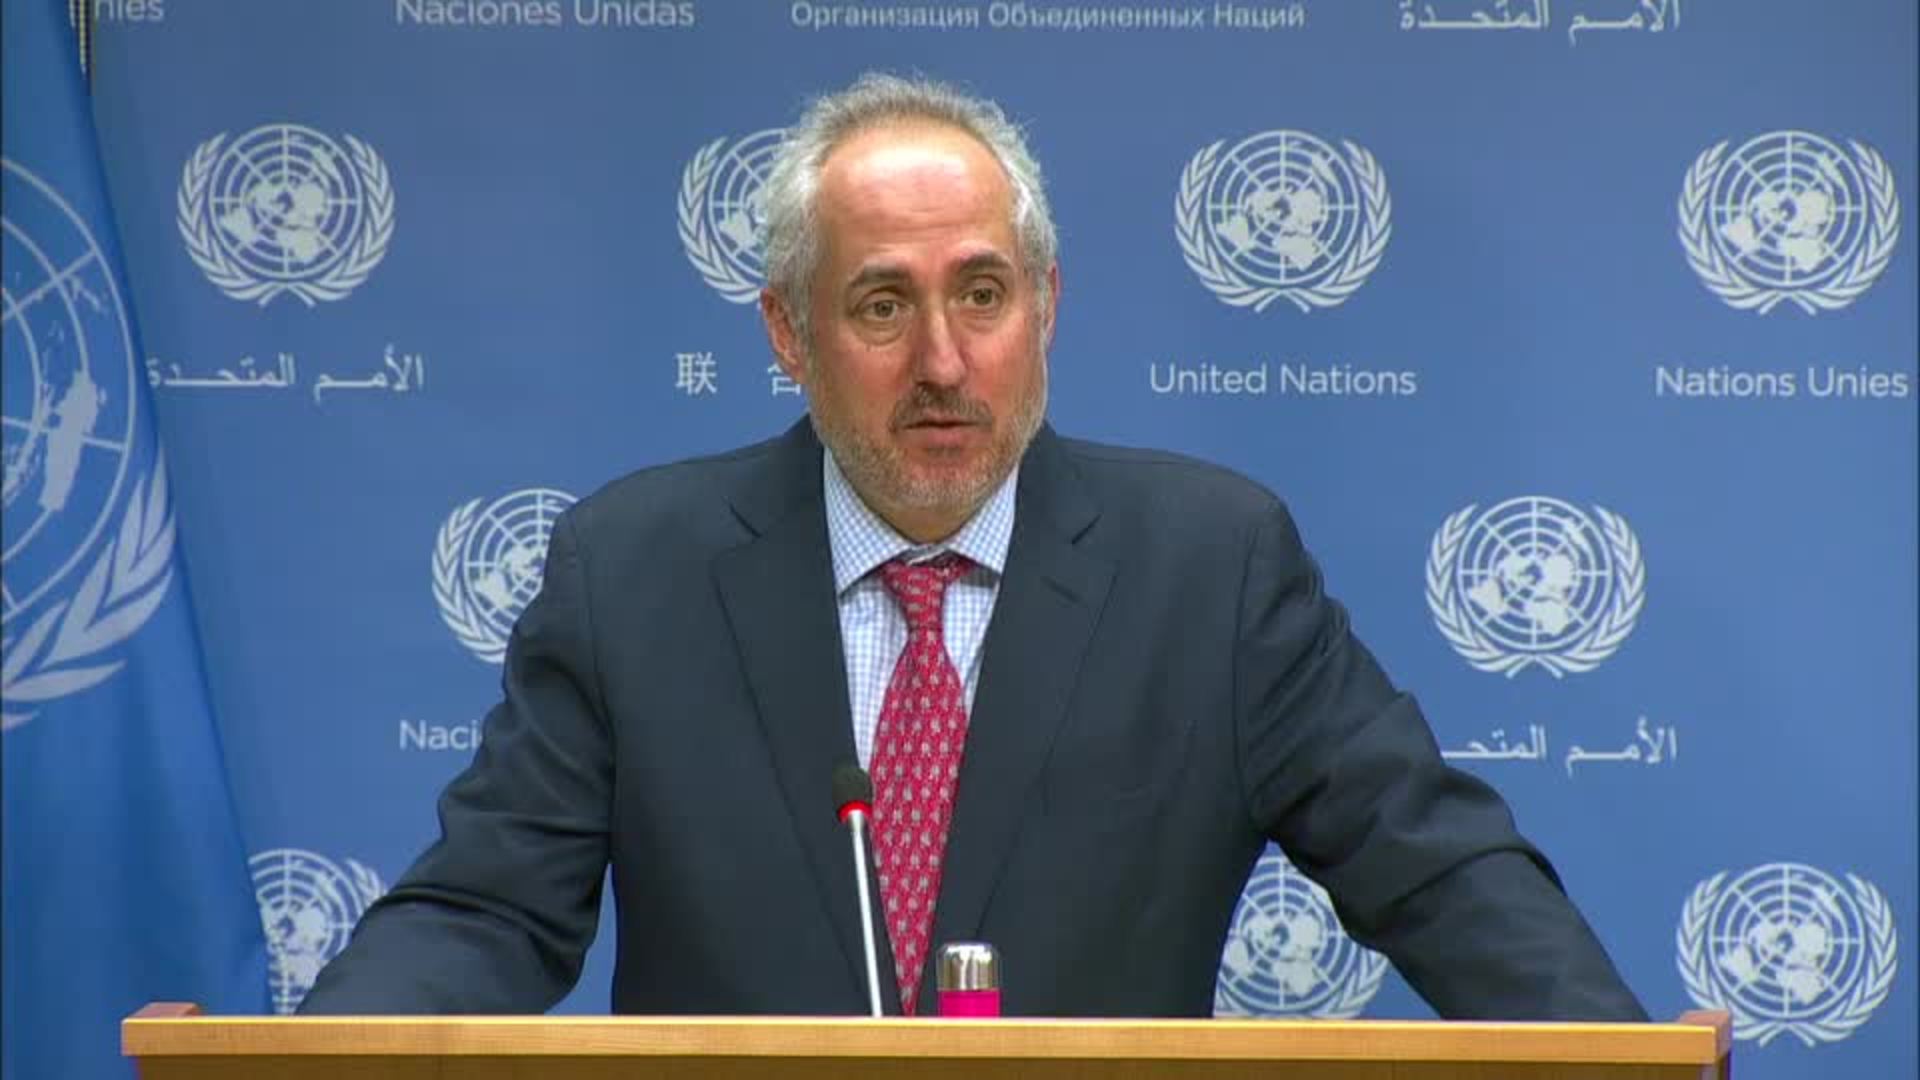 الأمم المتحدة تؤكد استمرار دعمها لمواجهة التحديات التي تواجه الشعب الفلسطيني